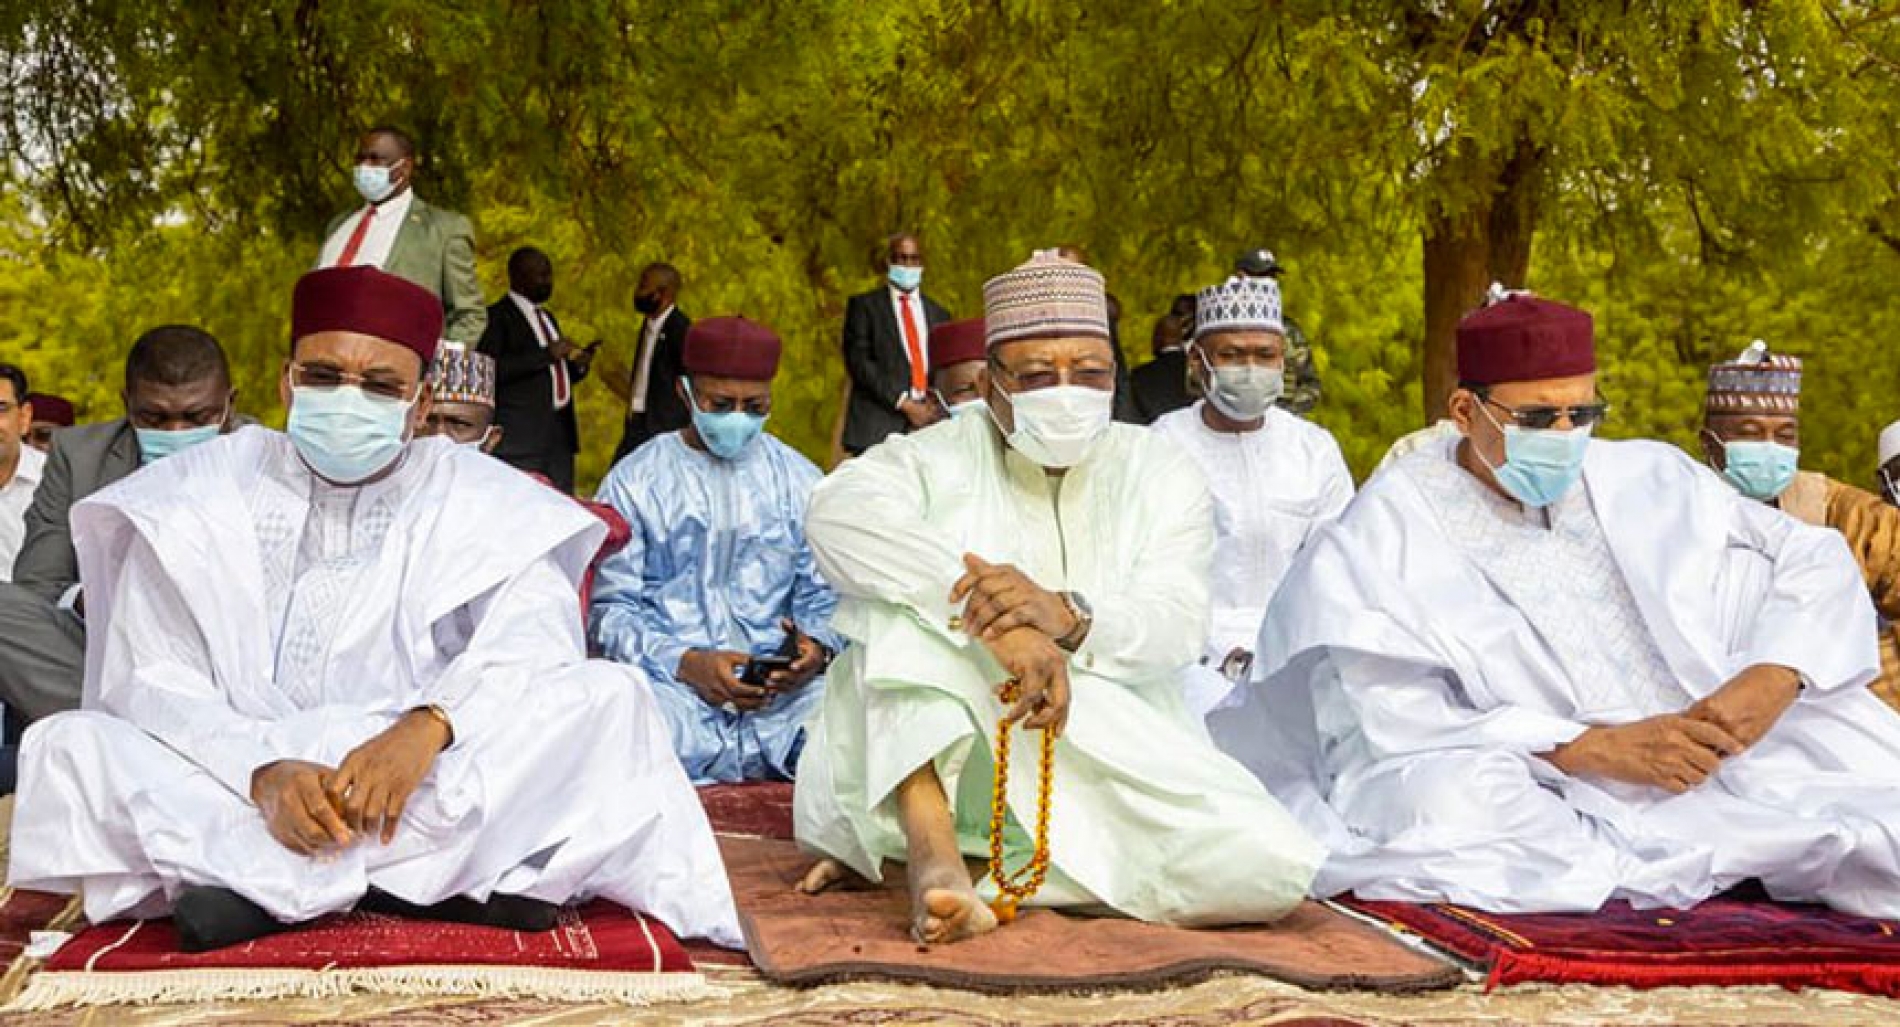 Célébration de la fête de l’AÏD EL-FITR / Ramadan : Quand le Niger fête sur ses blessures